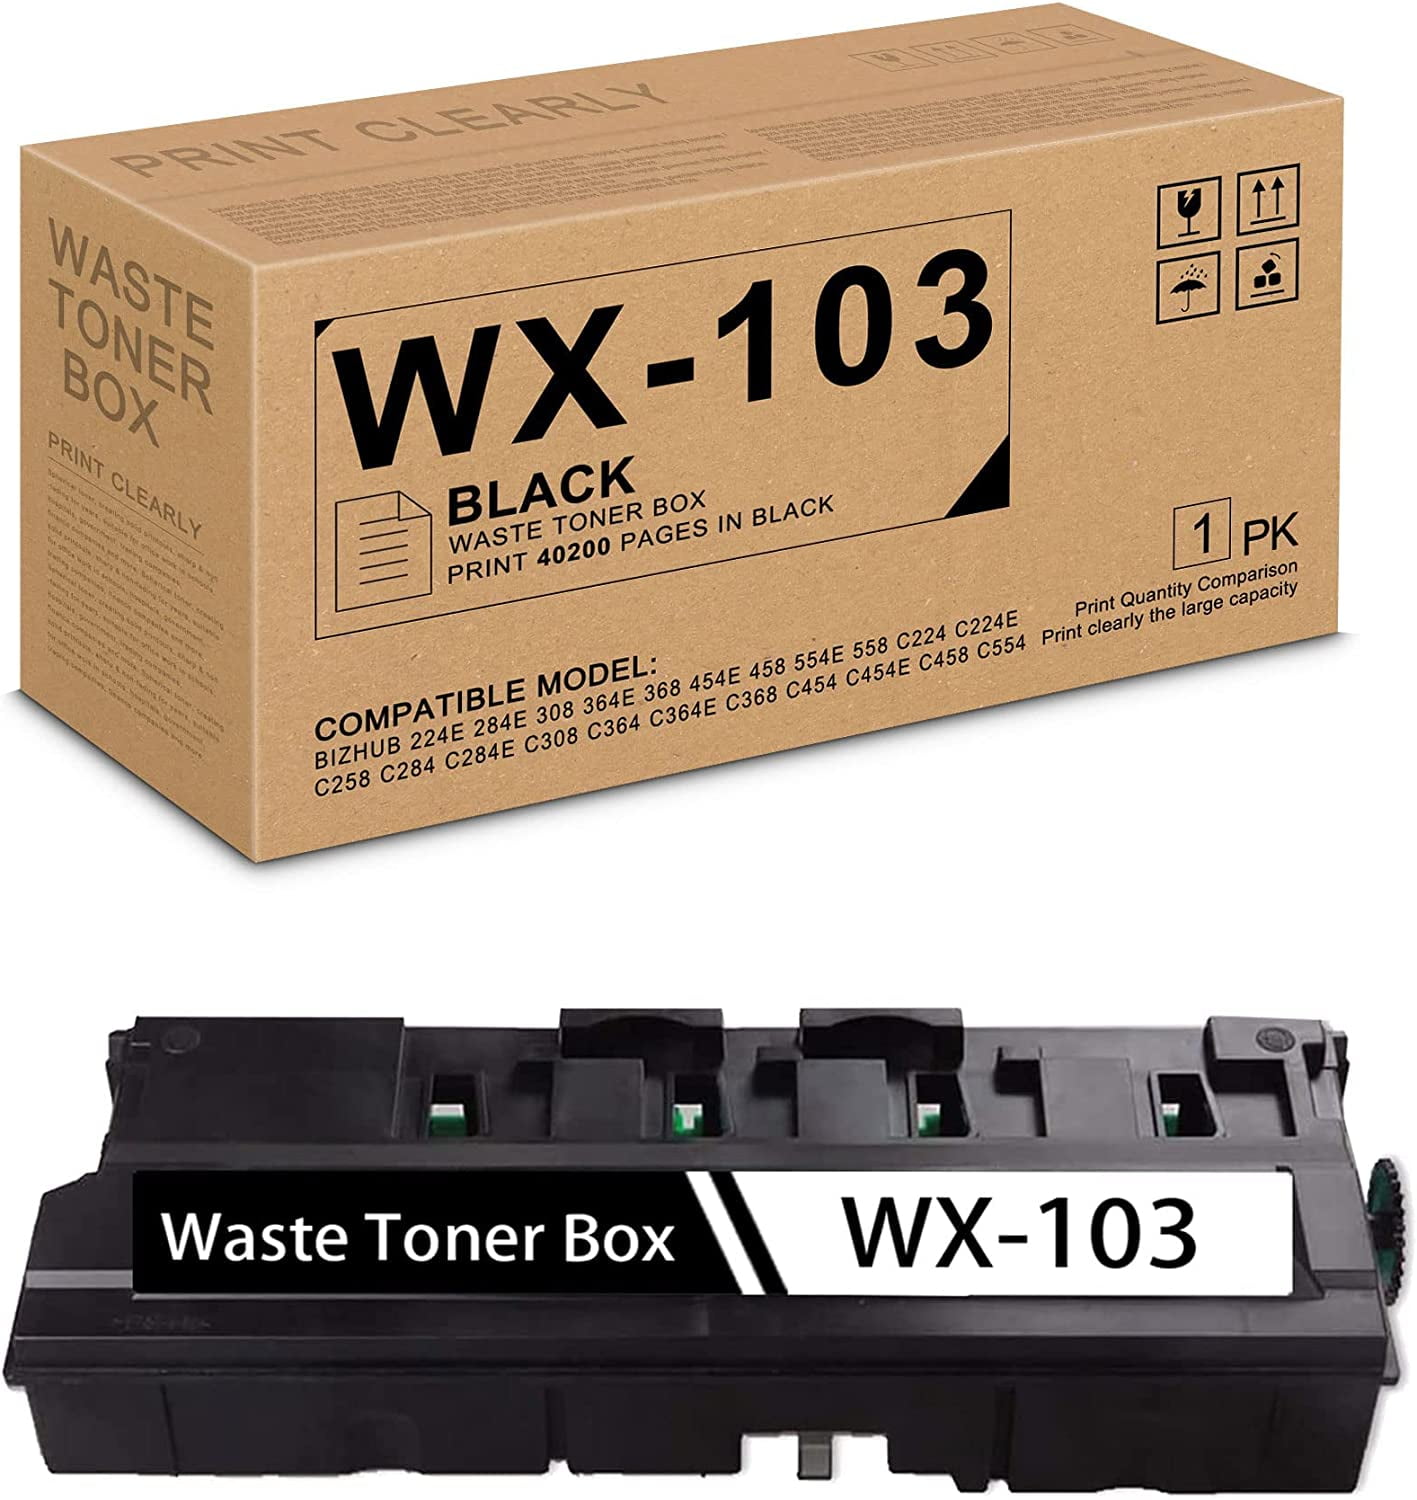 Коника 224. WX-103. WX-103 WX-105 различия. WX-103 фото коробки a4nnwy4/a4nnwy4.